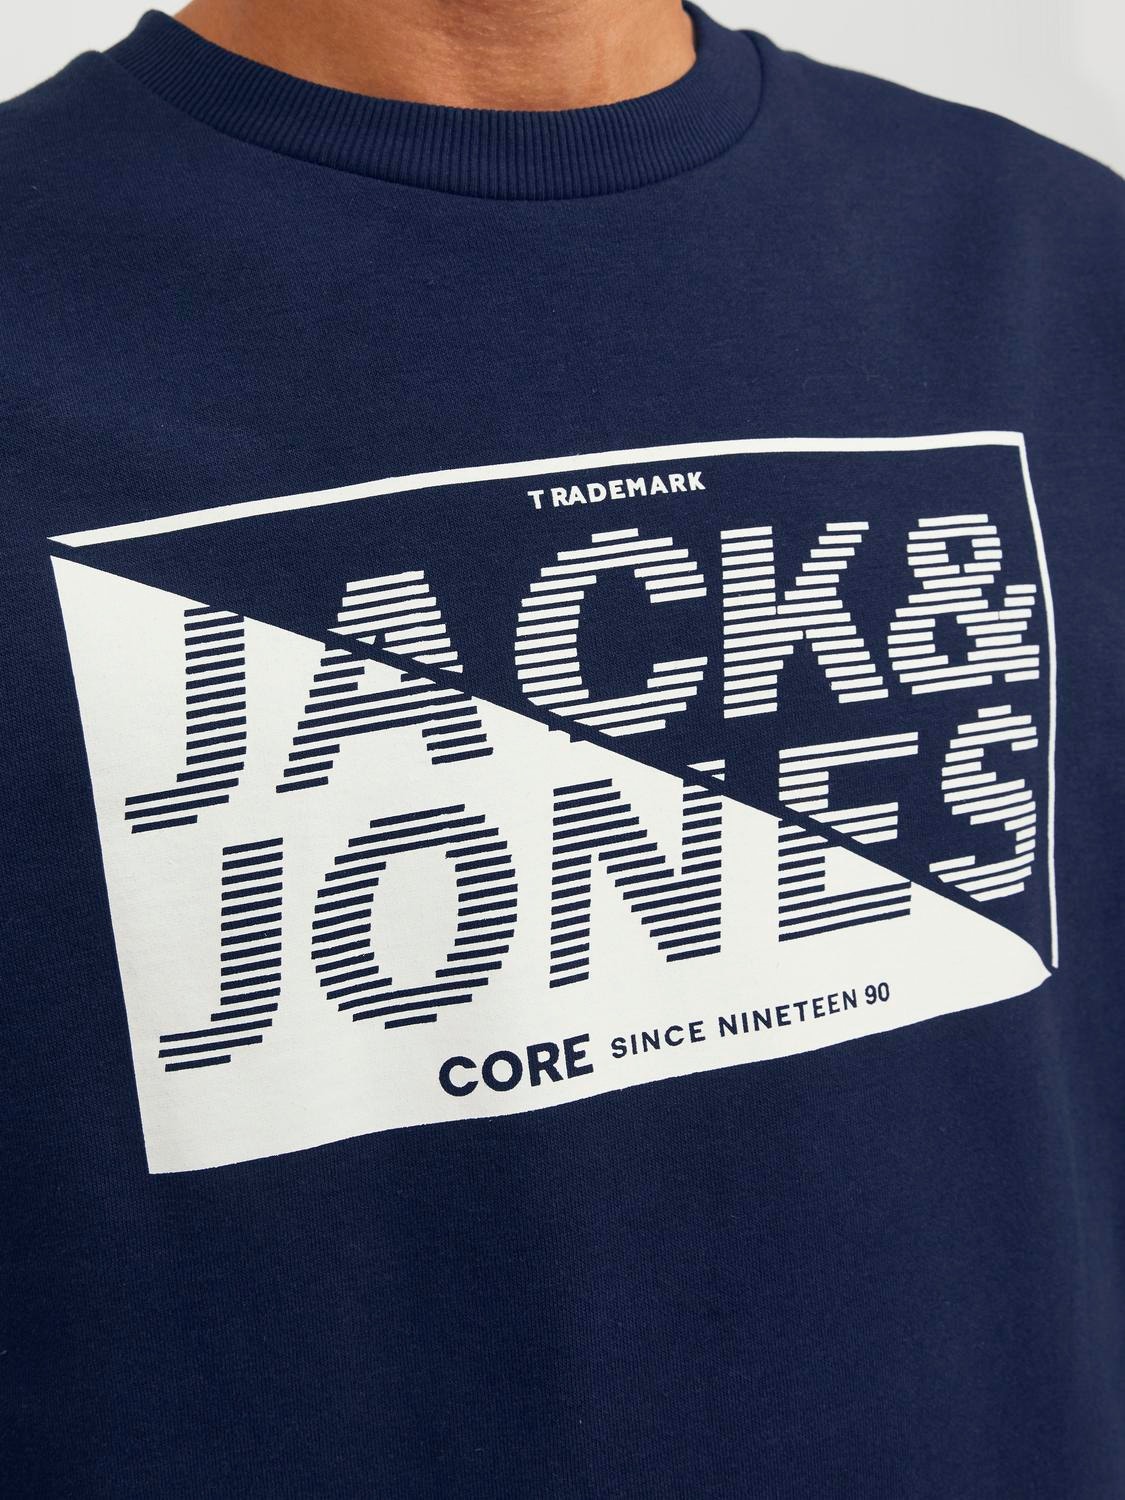 Jack & Jones Logo Crew neck Sweatshirt -Navy Blazer - 12243922